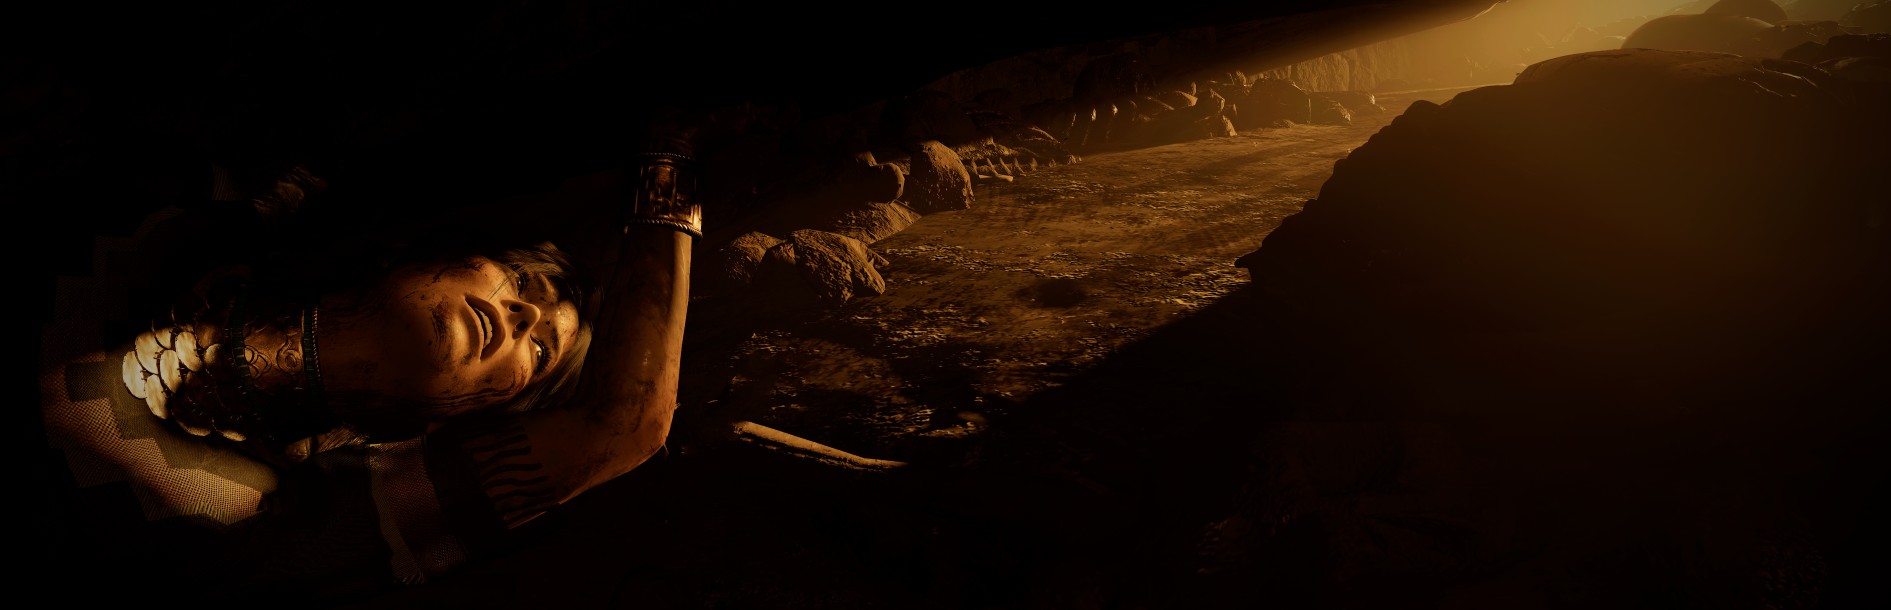 《古墓丽影：暗影》超精美截图 劳拉美爆 风景也棒